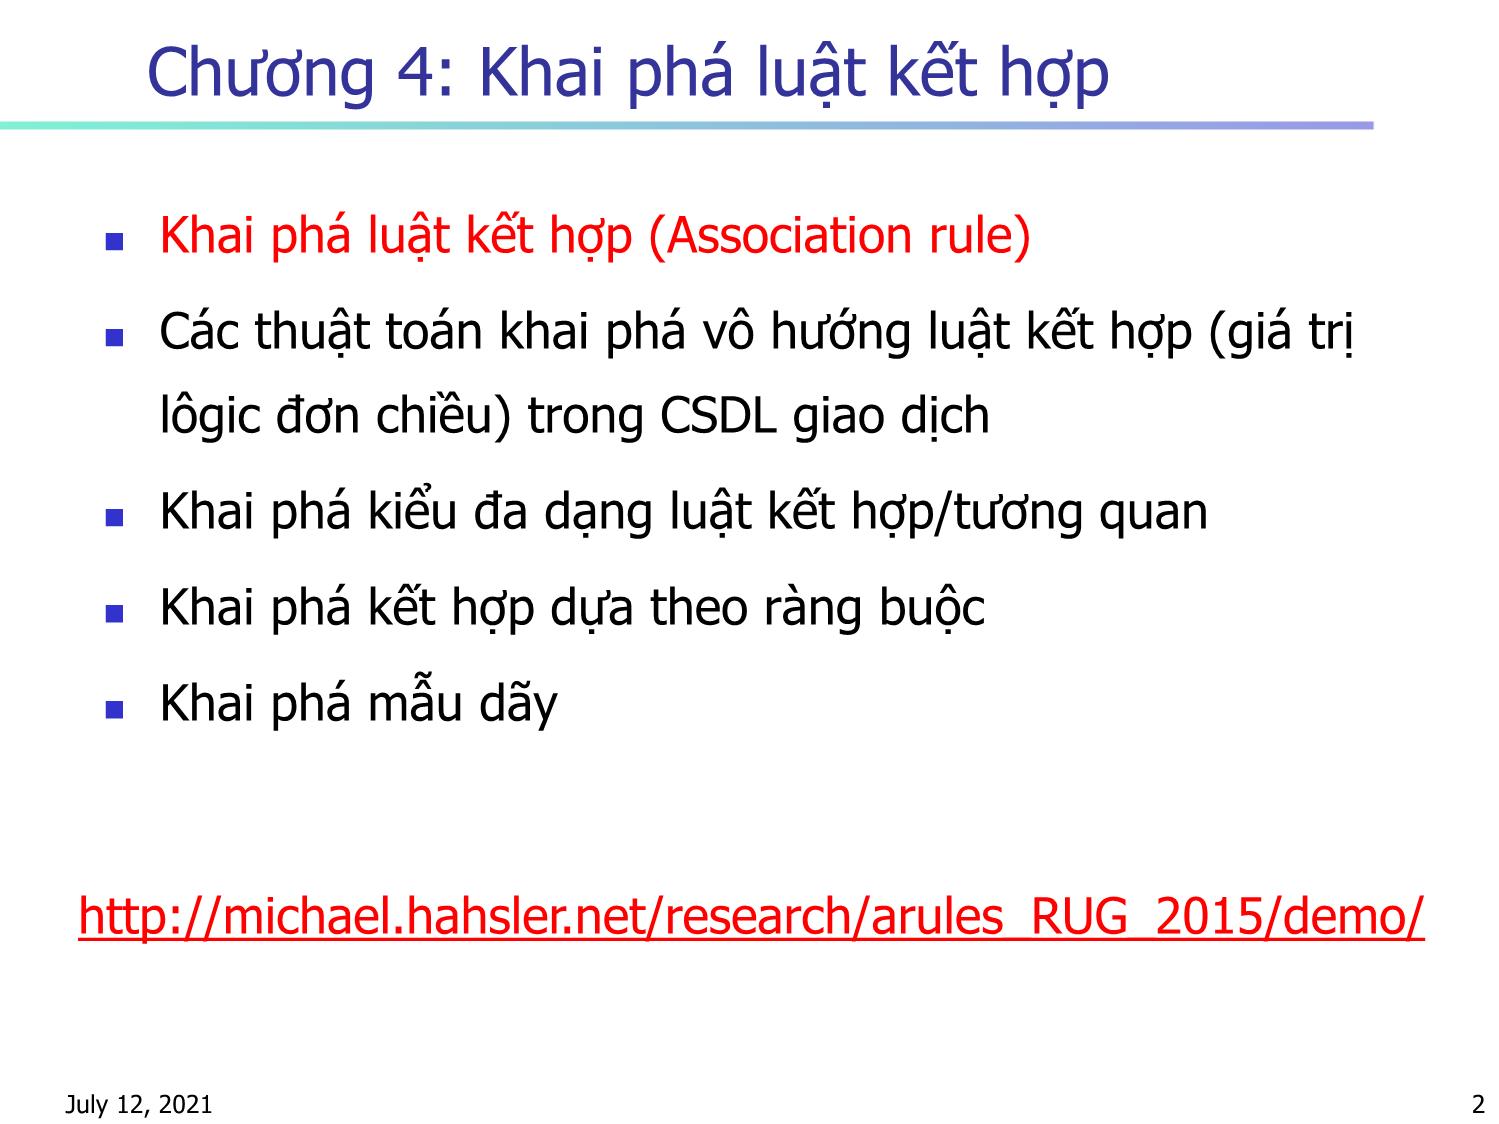 Bài giảng Nhập môn khai phá dữ liệu - Chương 4: Khai phá luật kết hợp - Hà Quang Thụy trang 2